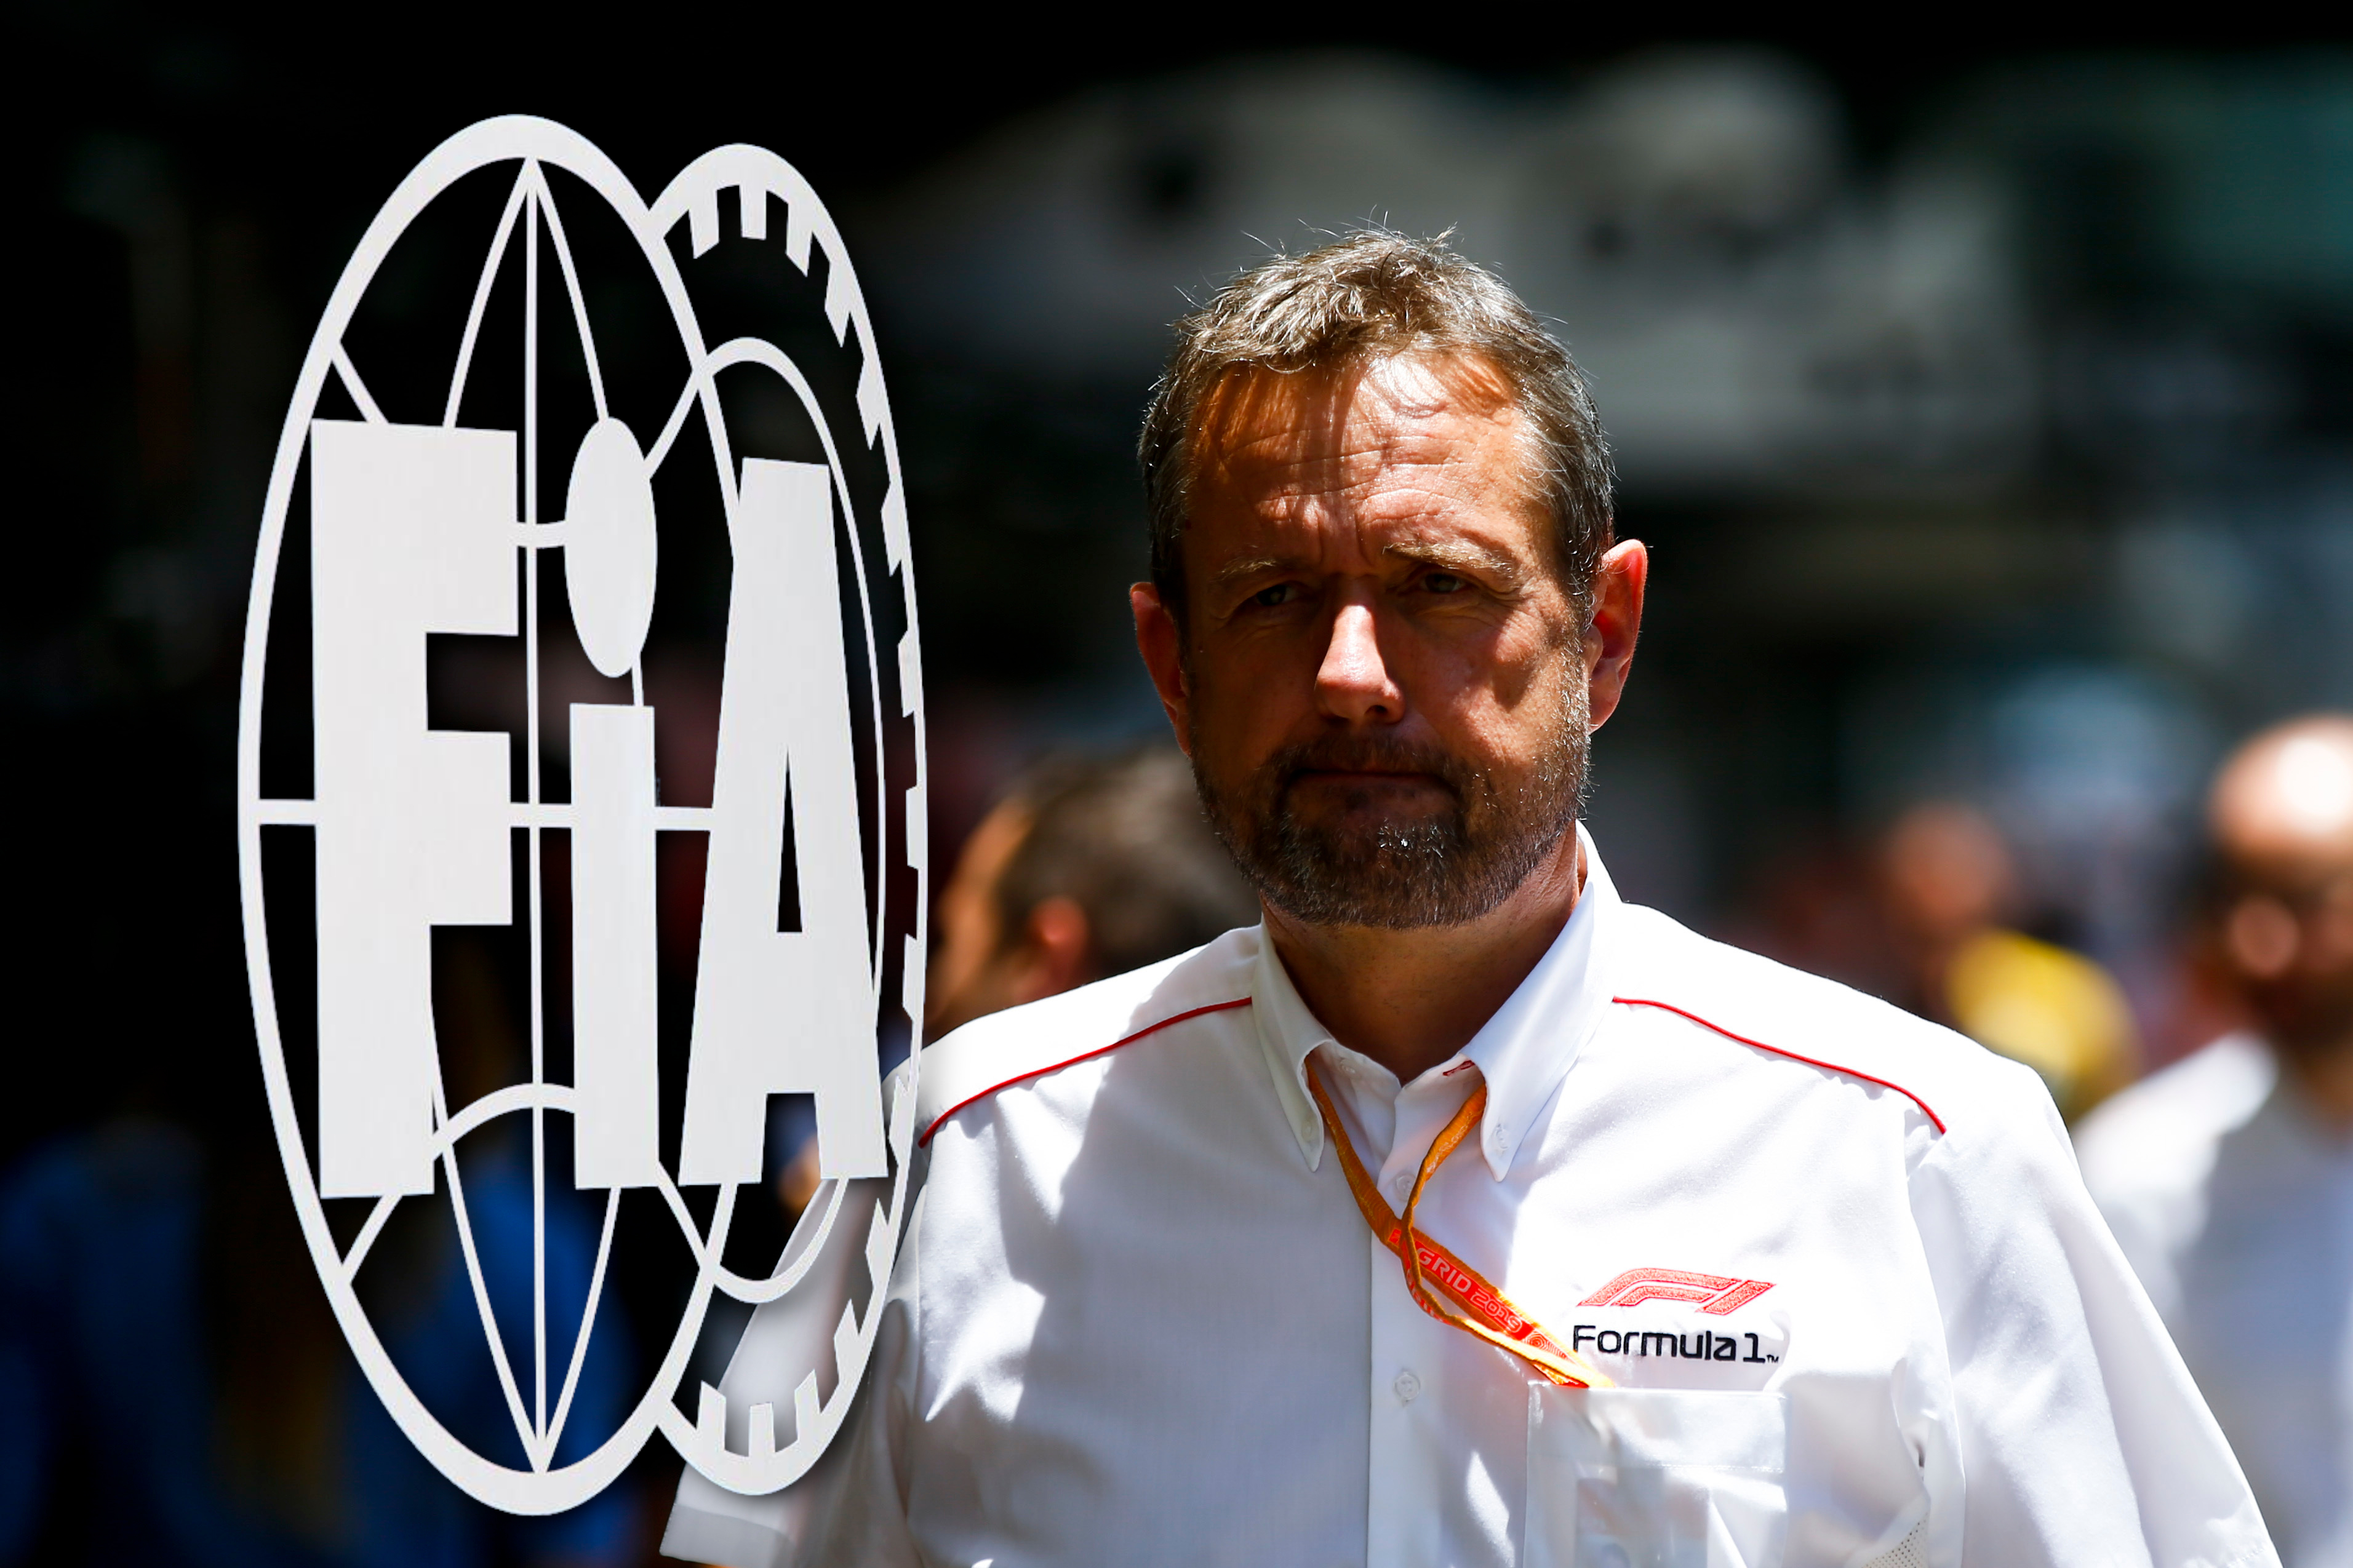 フォーミュラ 1: レース ディレクターとの問題は解決しない – FIA は抜本的な措置を講じる